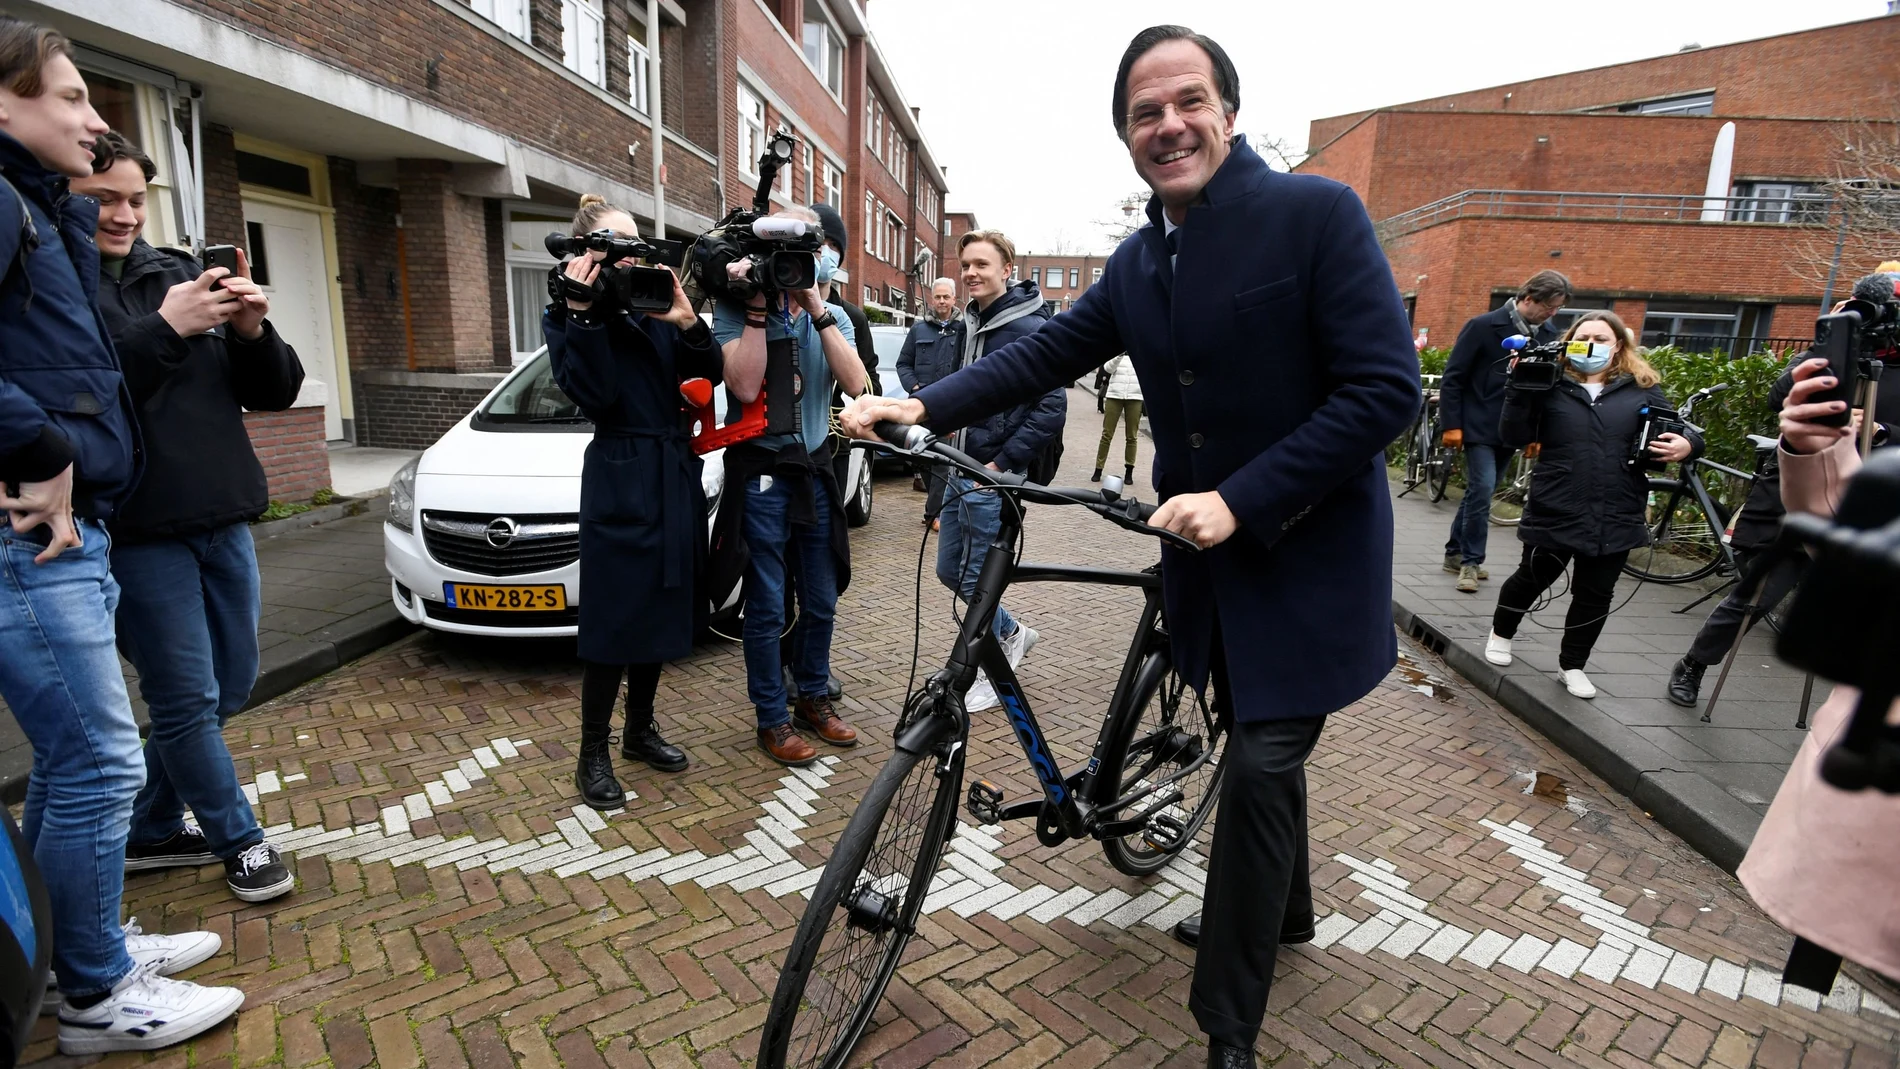 El primer ministro neerlandés, Mark Rutte, depositó a primera hora su voto en su habitual colegio electoral de La Haya, a donde llegó solo, montado en su bicicleta